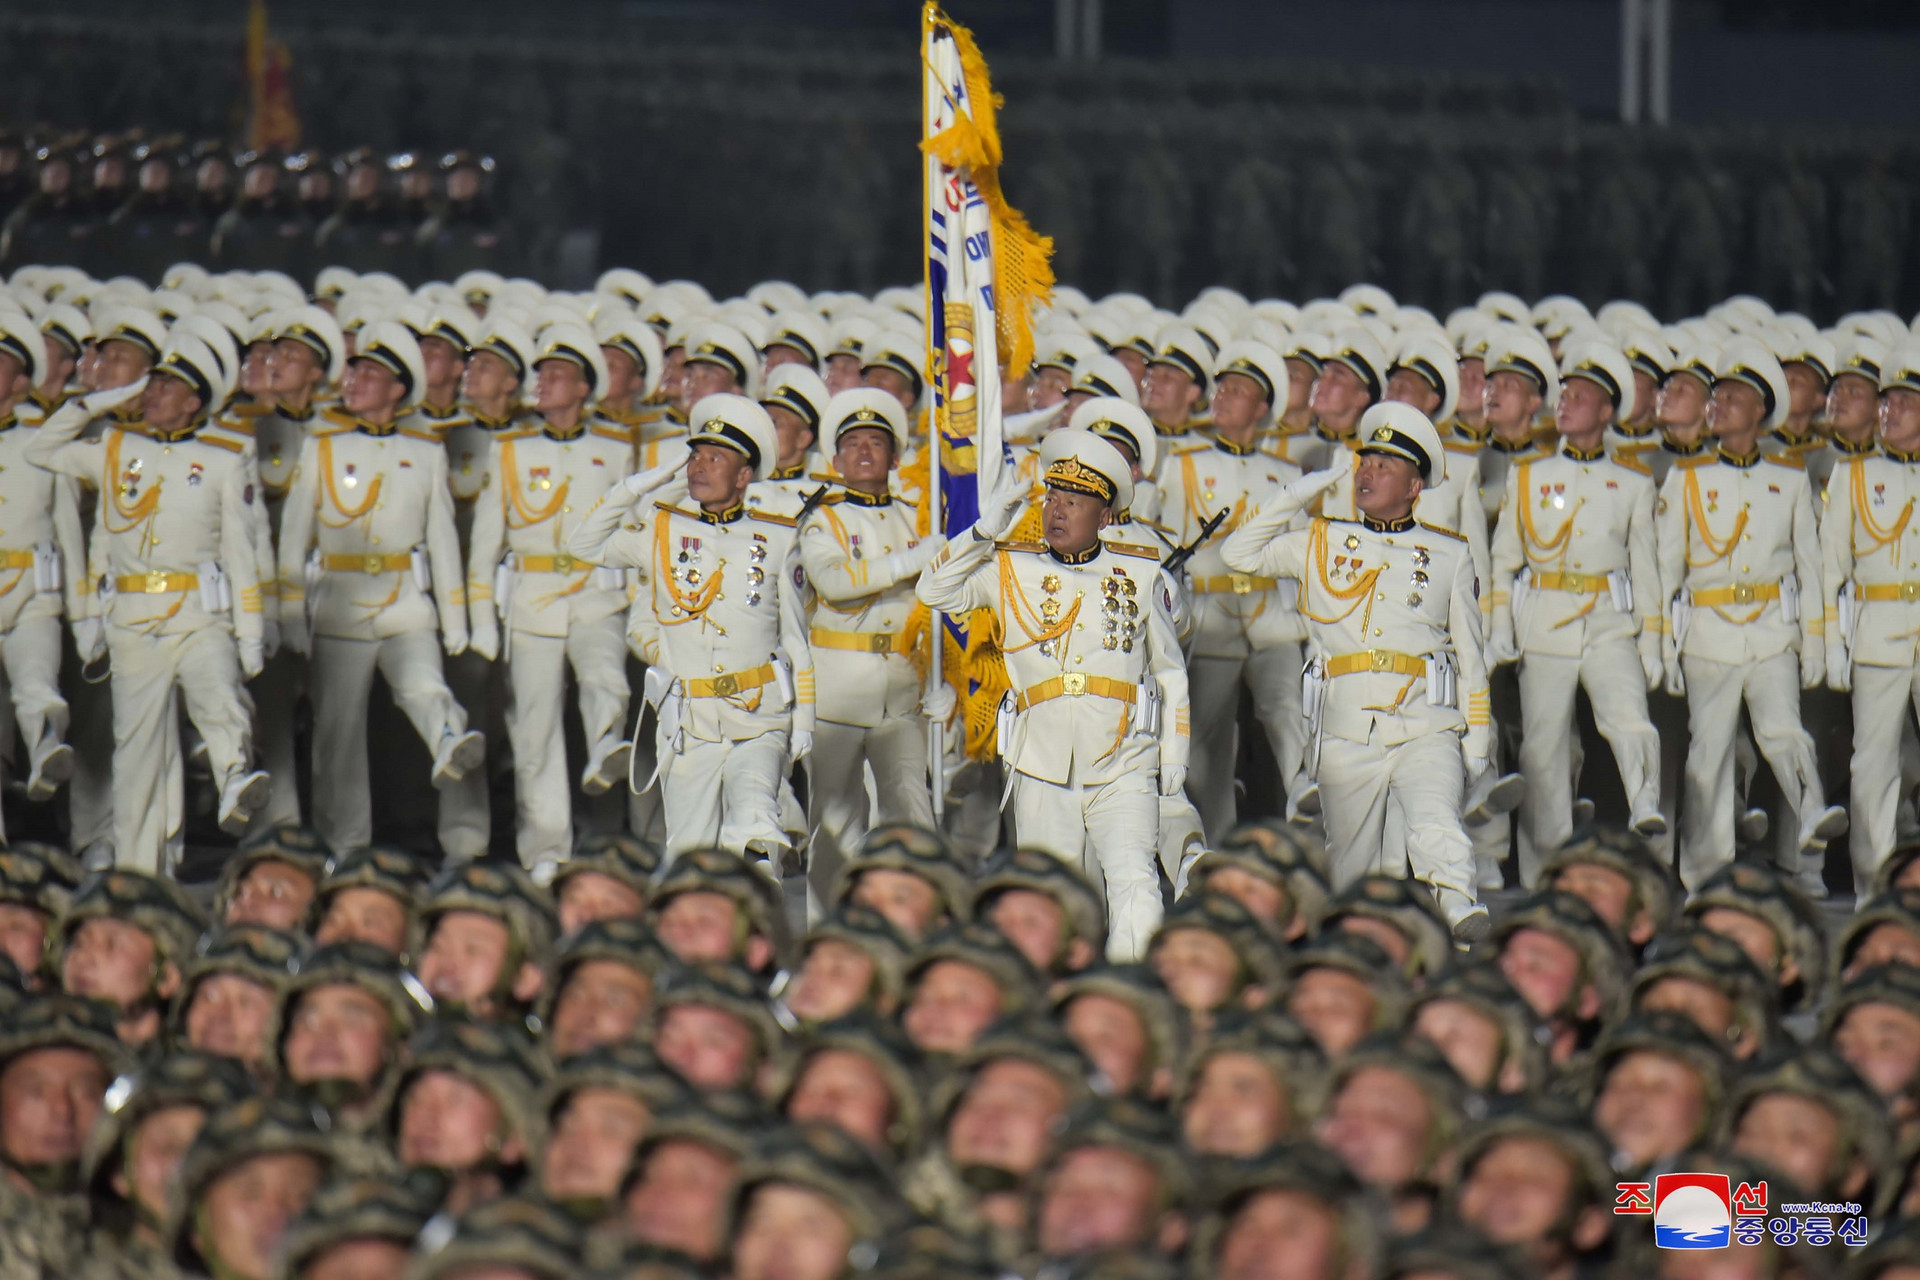 Ảnh: Dàn khí tài hoành tráng trong lễ duyệt binh Triều Tiên kỷ niệm đại hội đảng - 14